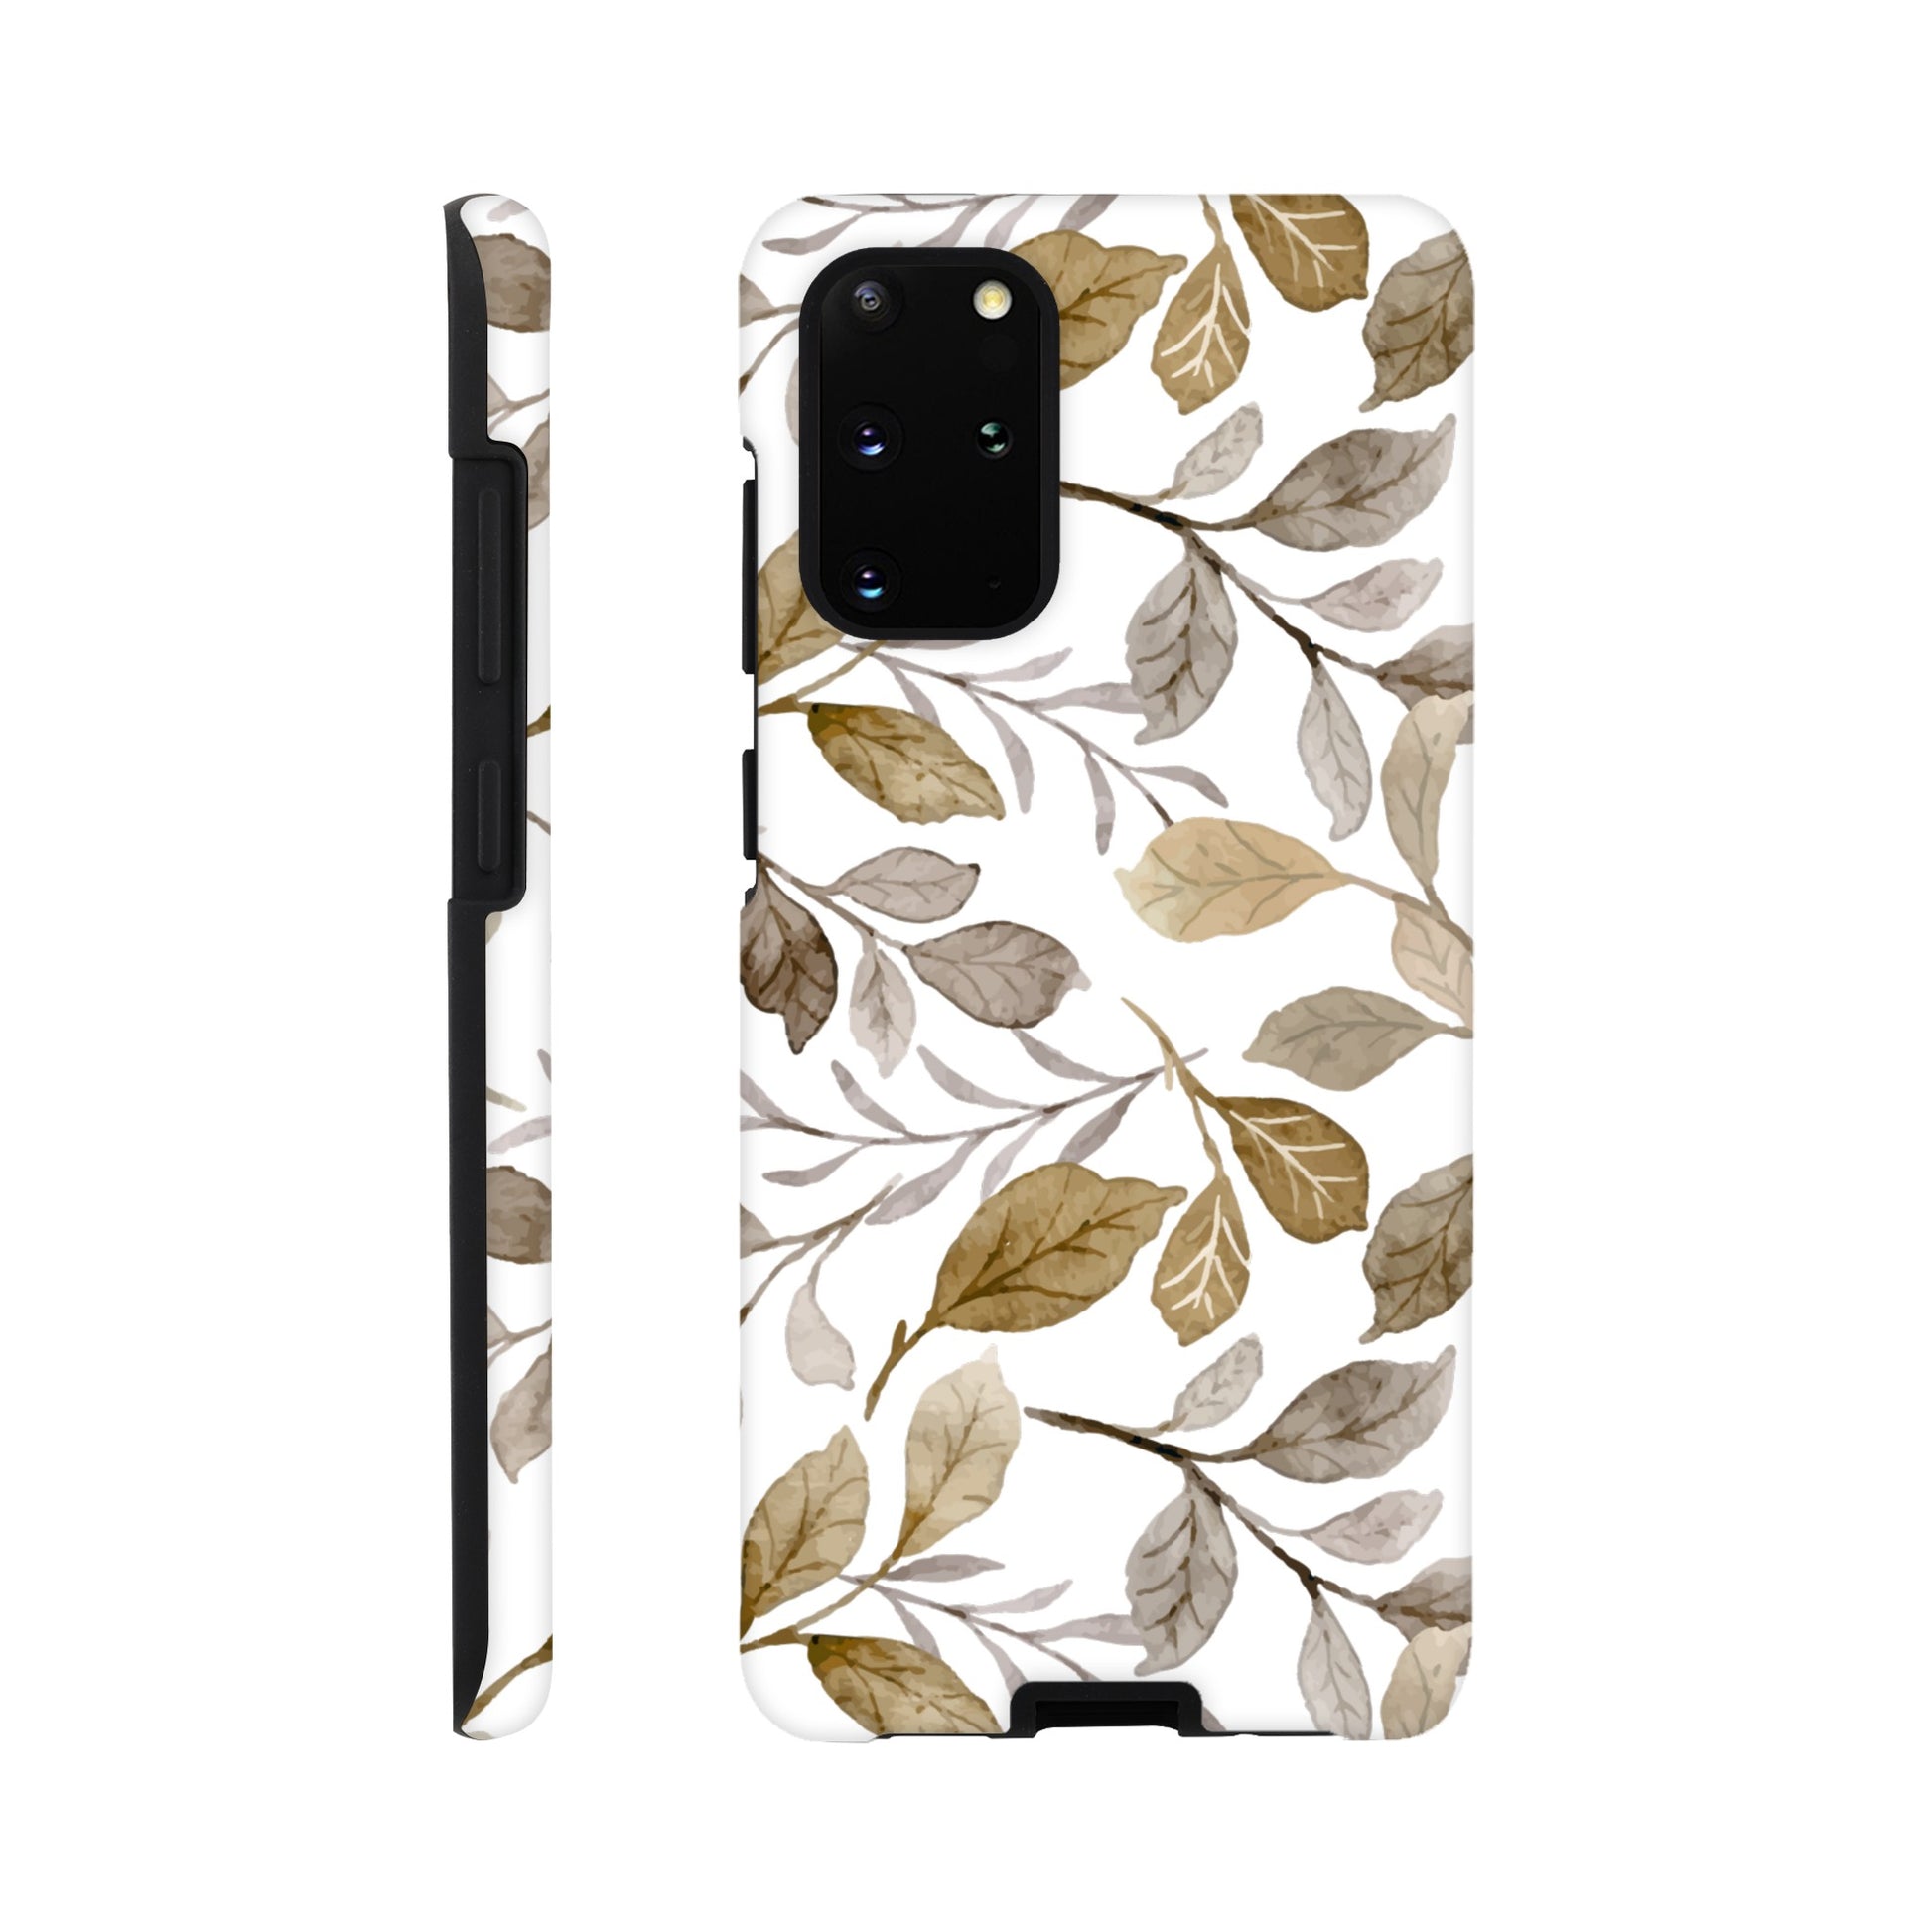 Autumn Leaves - Phone Tough Case Galaxy S20 Plus Phone Case Plants